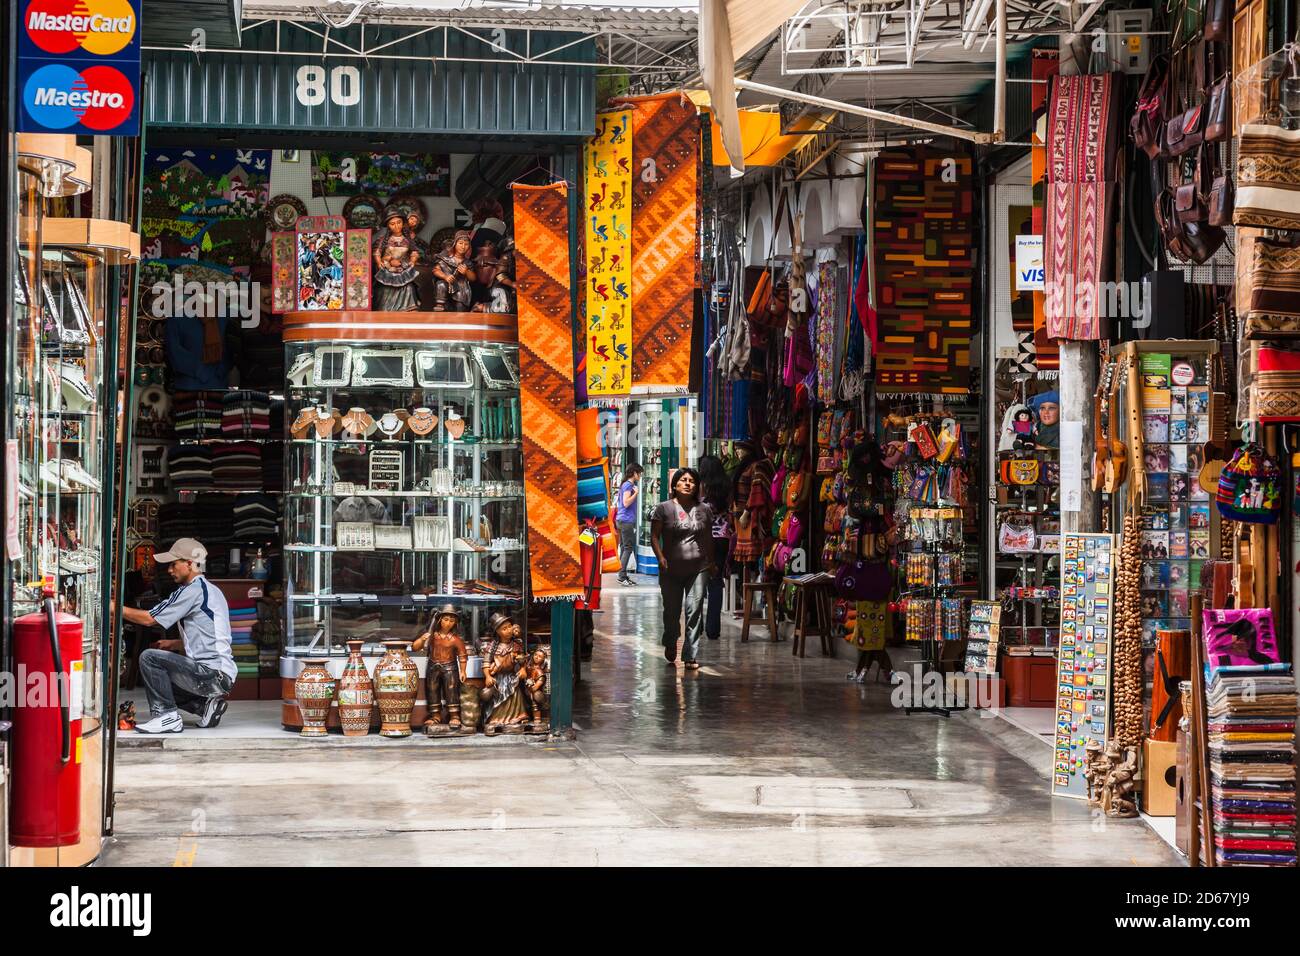 Boutique de souvenirs péruviens, 'Inka Plaza', Miraflores, Lima, Pérou, Amérique du Sud Banque D'Images